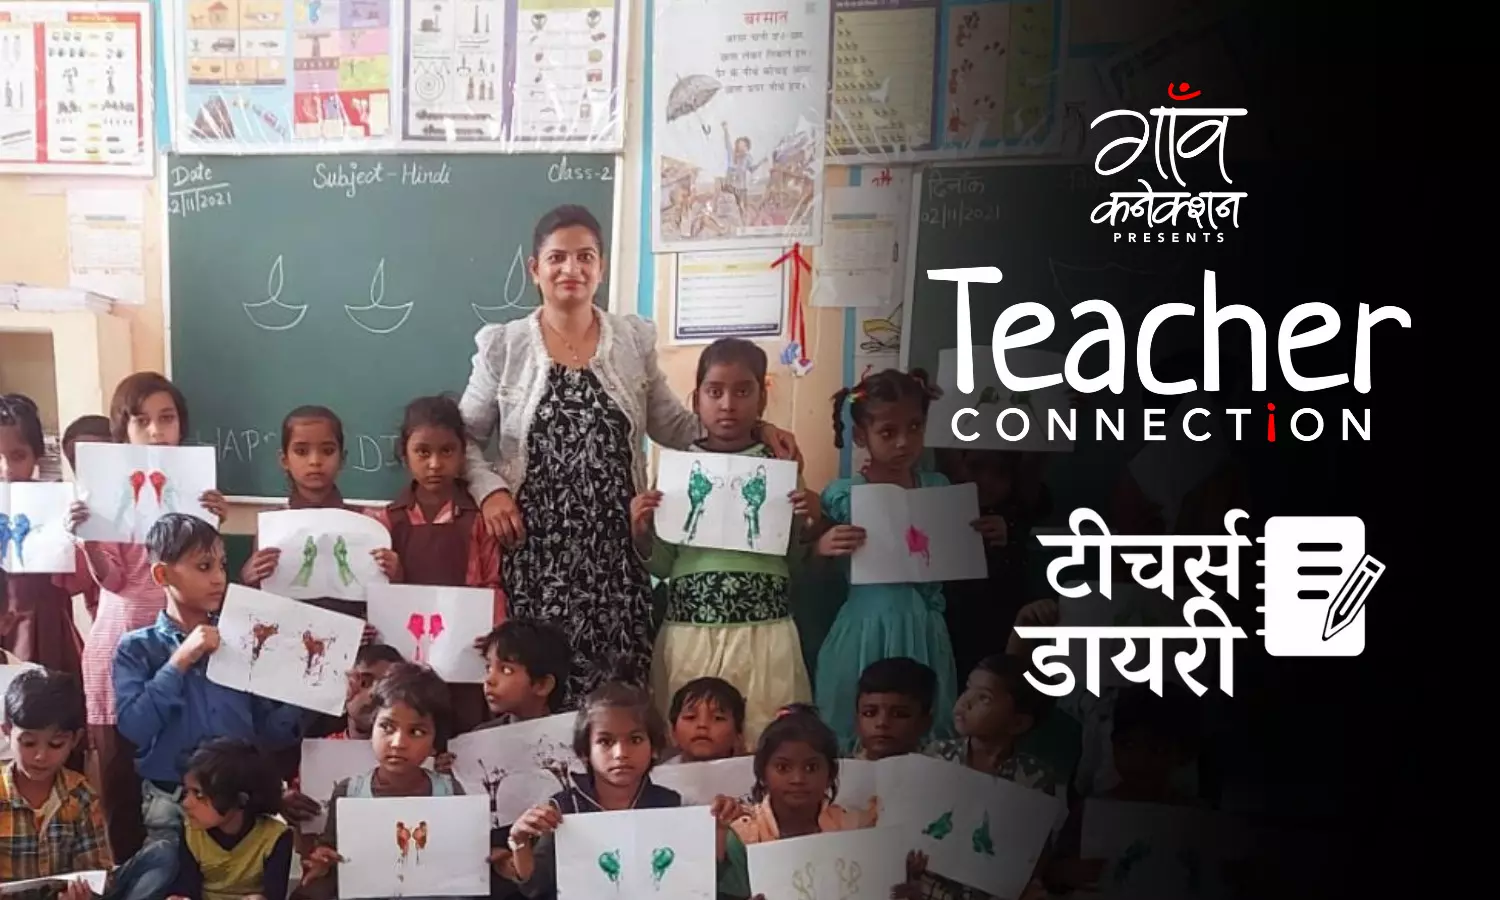 टीचर्स डायरी: बच्चों के साथ ही उनके अभिभावकों को पढ़ना-लिखना सिखाया, आज वो भी अपना नाम अंग्रेजी में लिखते हैं